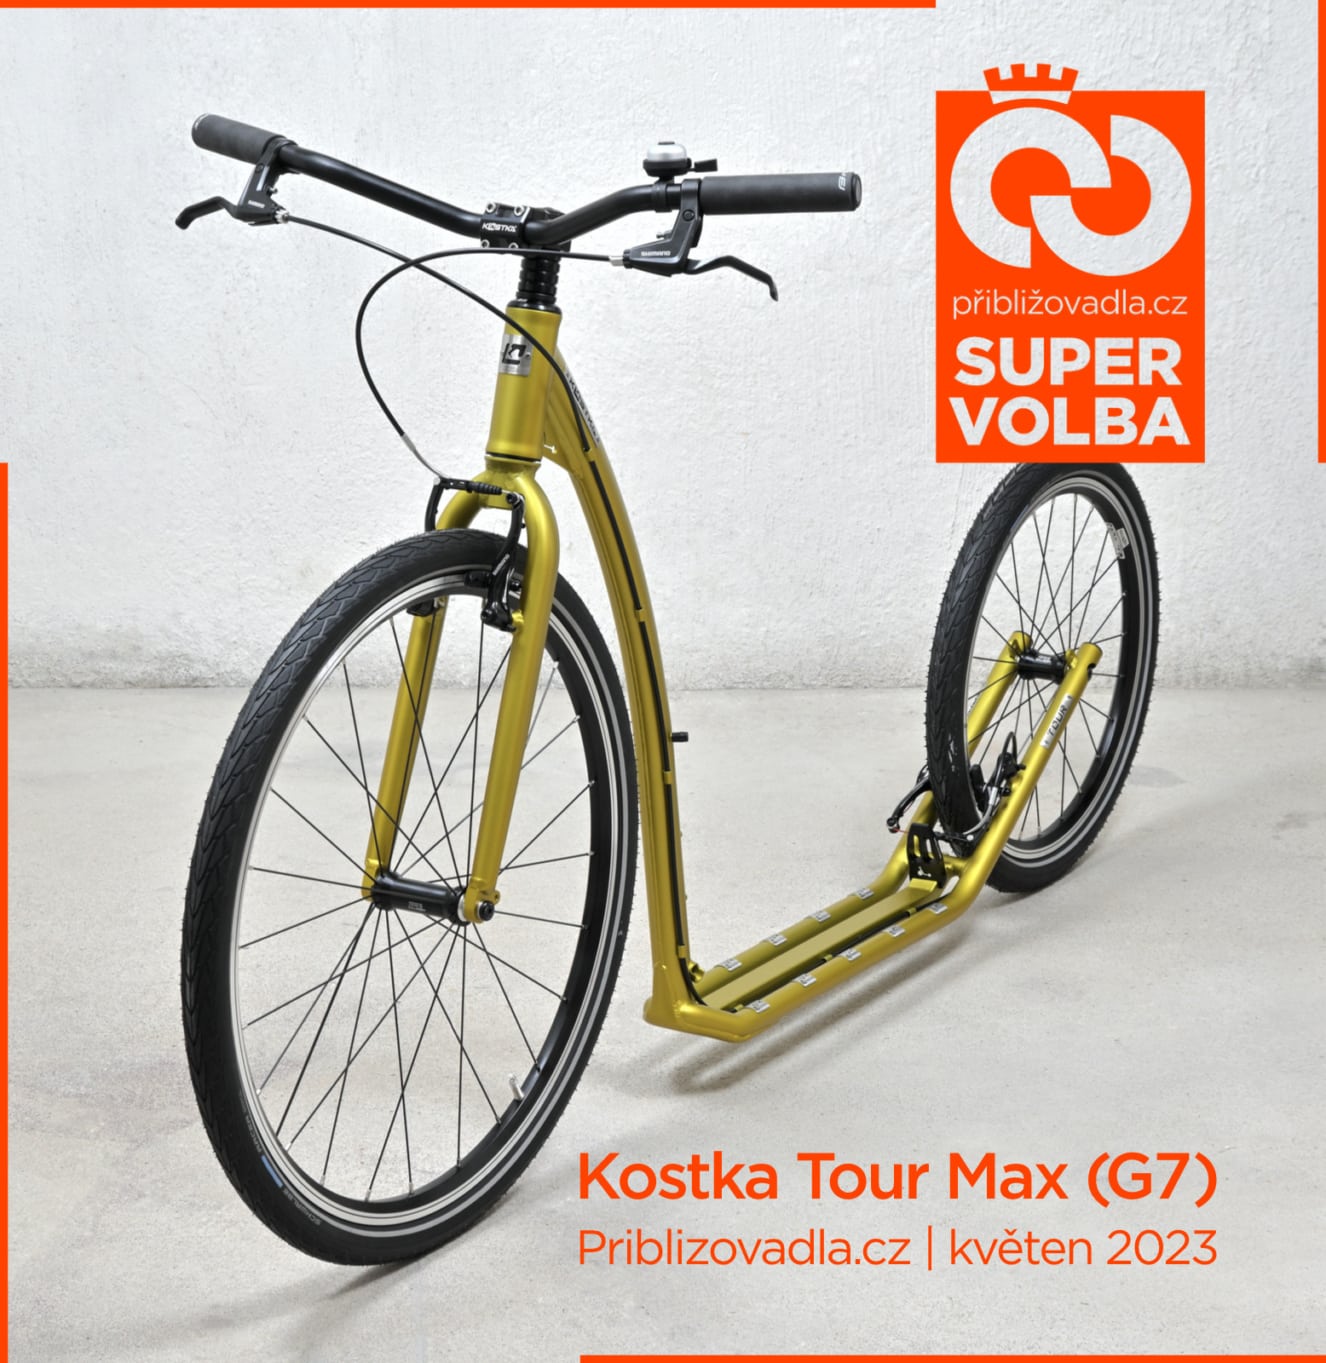 Kostka Tour Max (G7) – Super volba | Priblizovadla.cz, 05/2023